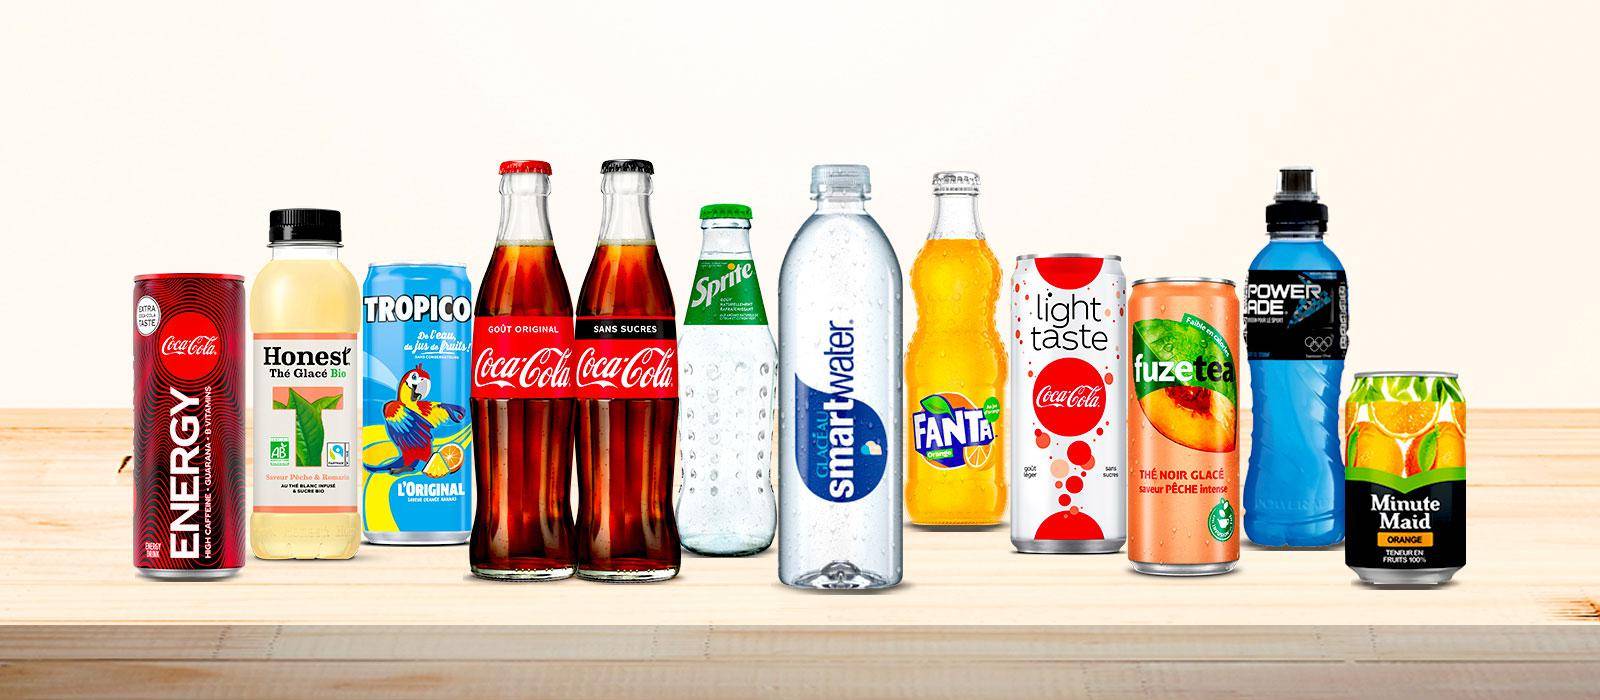 Mise en avant de différents produits Coca-Cola en France